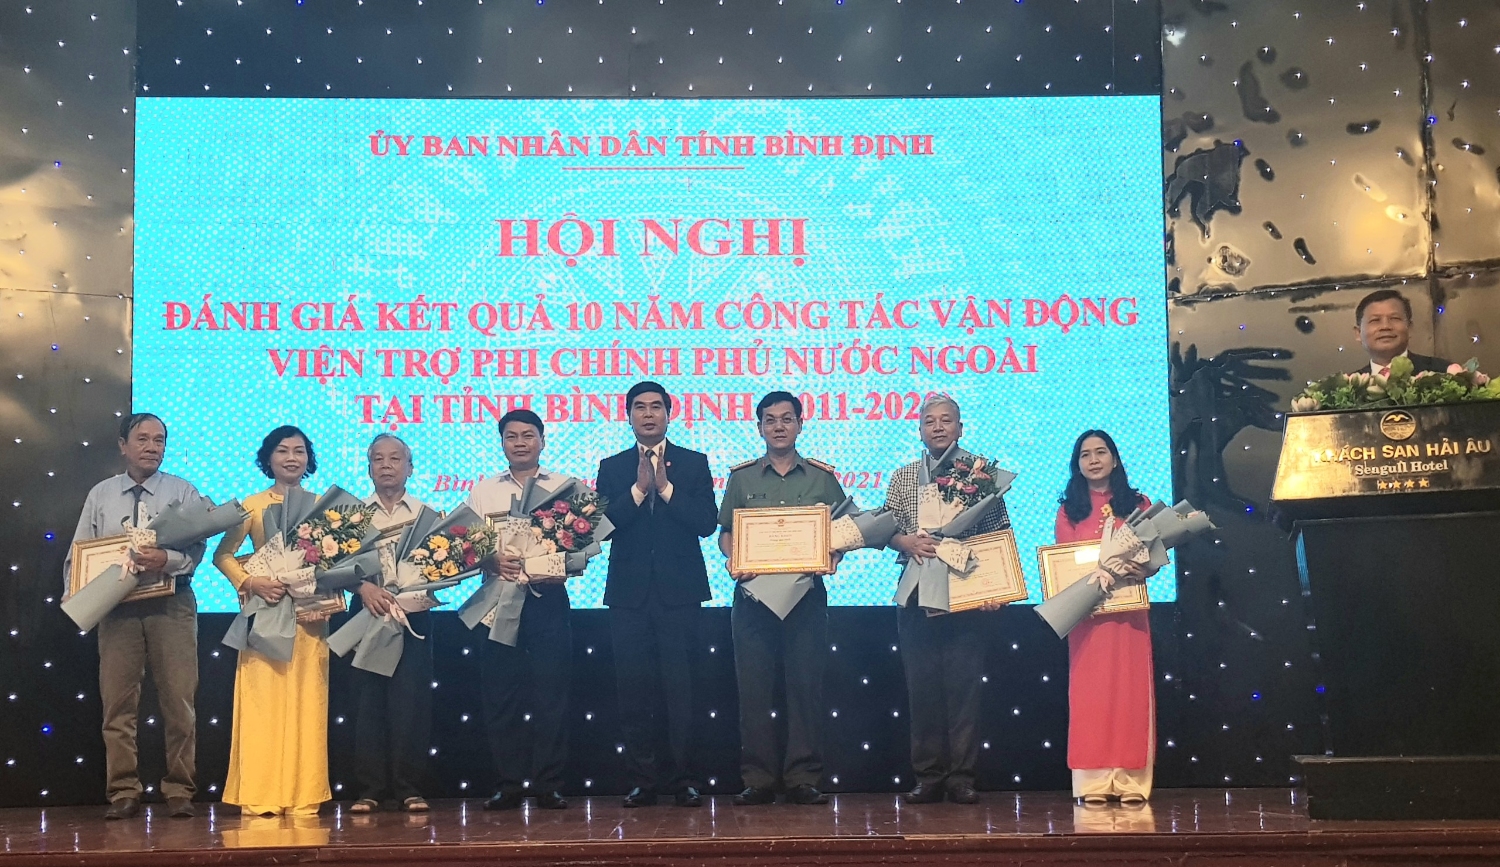 Hội nghị đánh giá 10 năm công tác PCPNN tại Bình Định